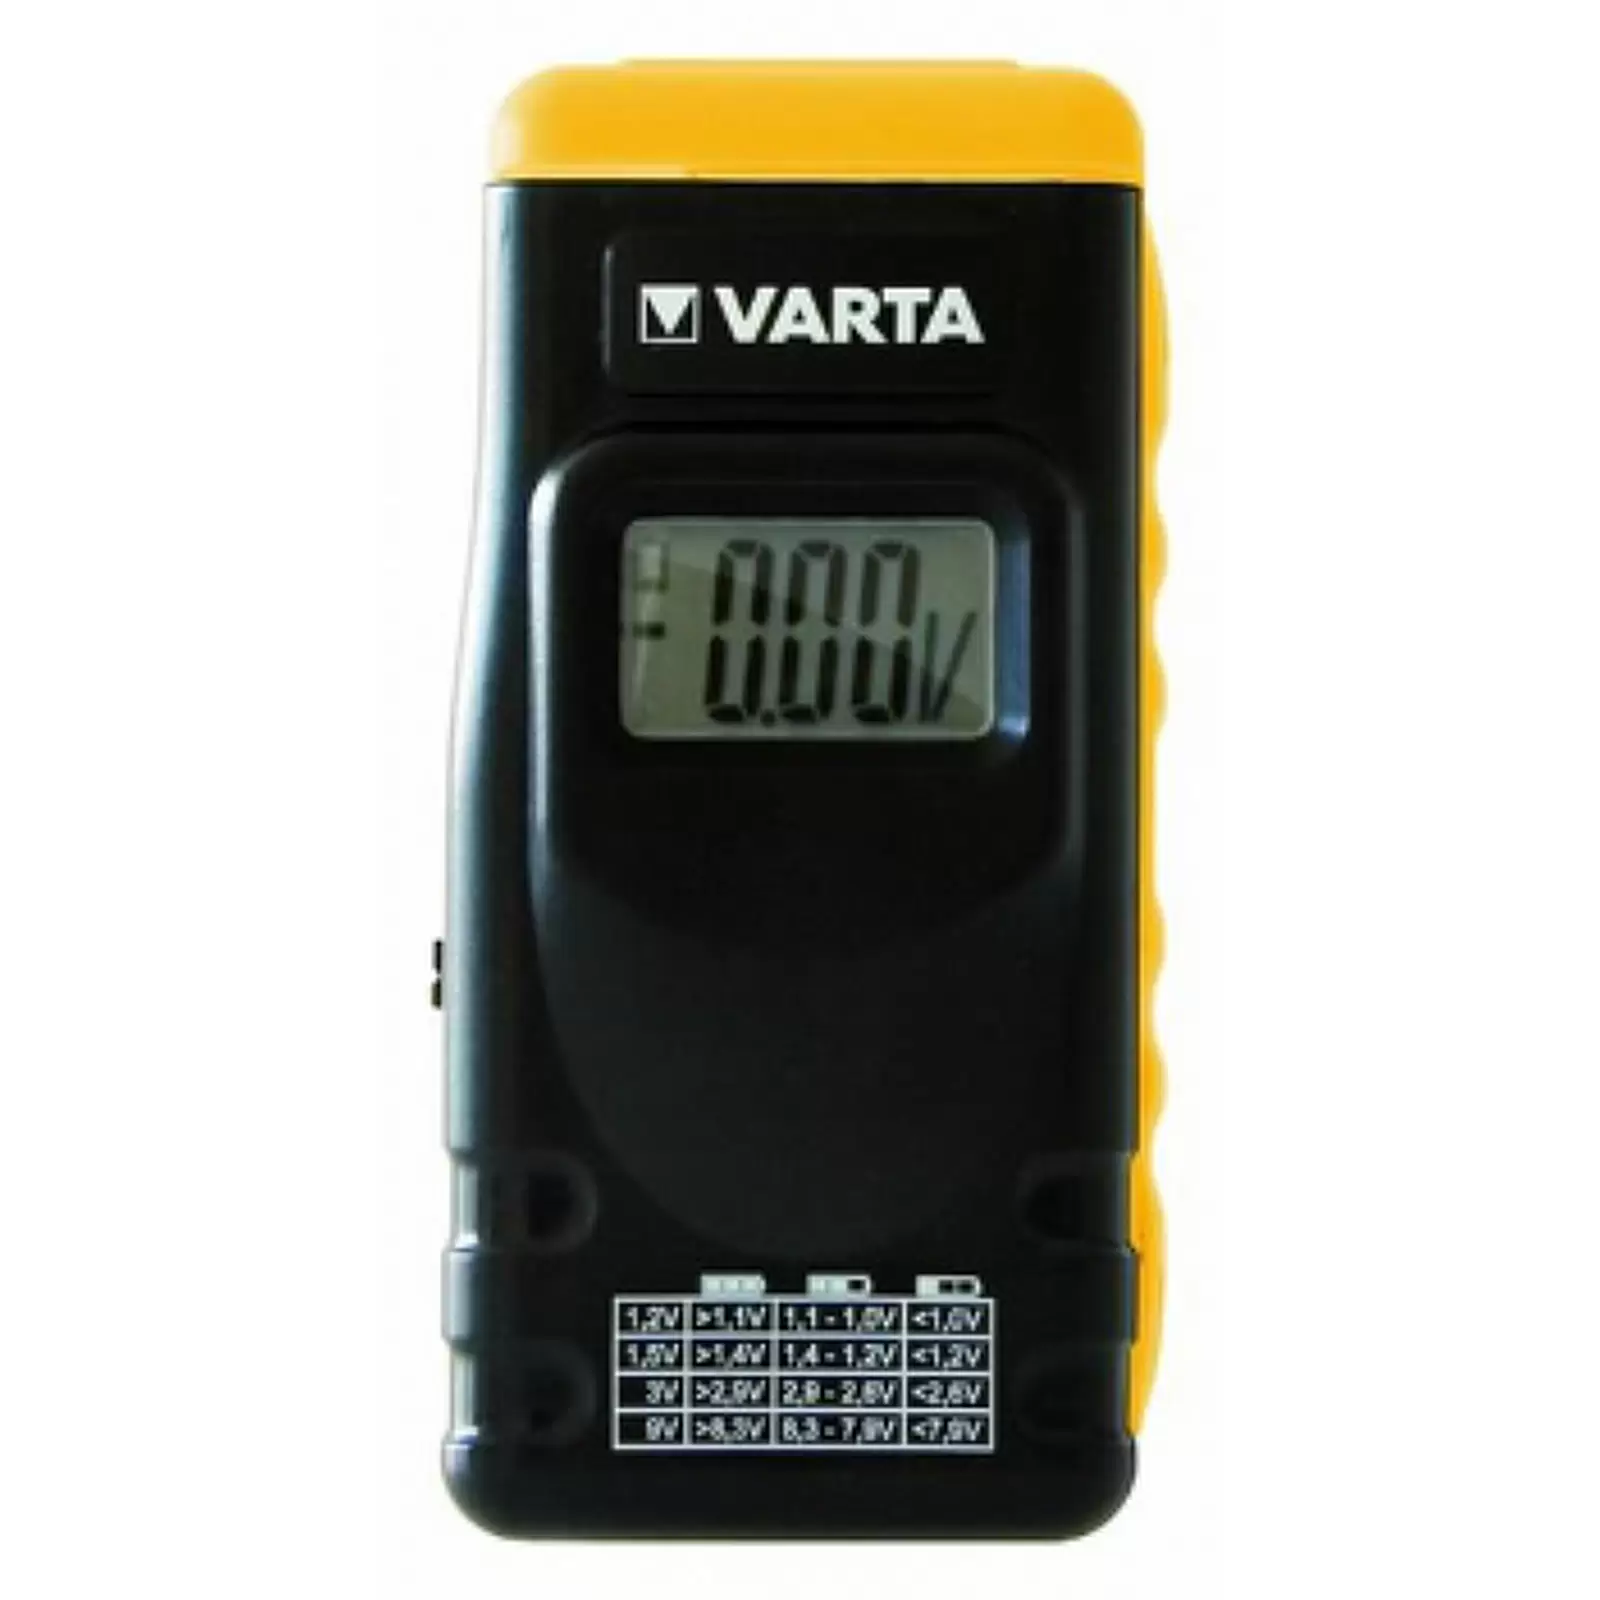 Varta Batterietester / Batterie Prüfgerät mit LCD-Display für Batterien, Akkus und Knopfzellen